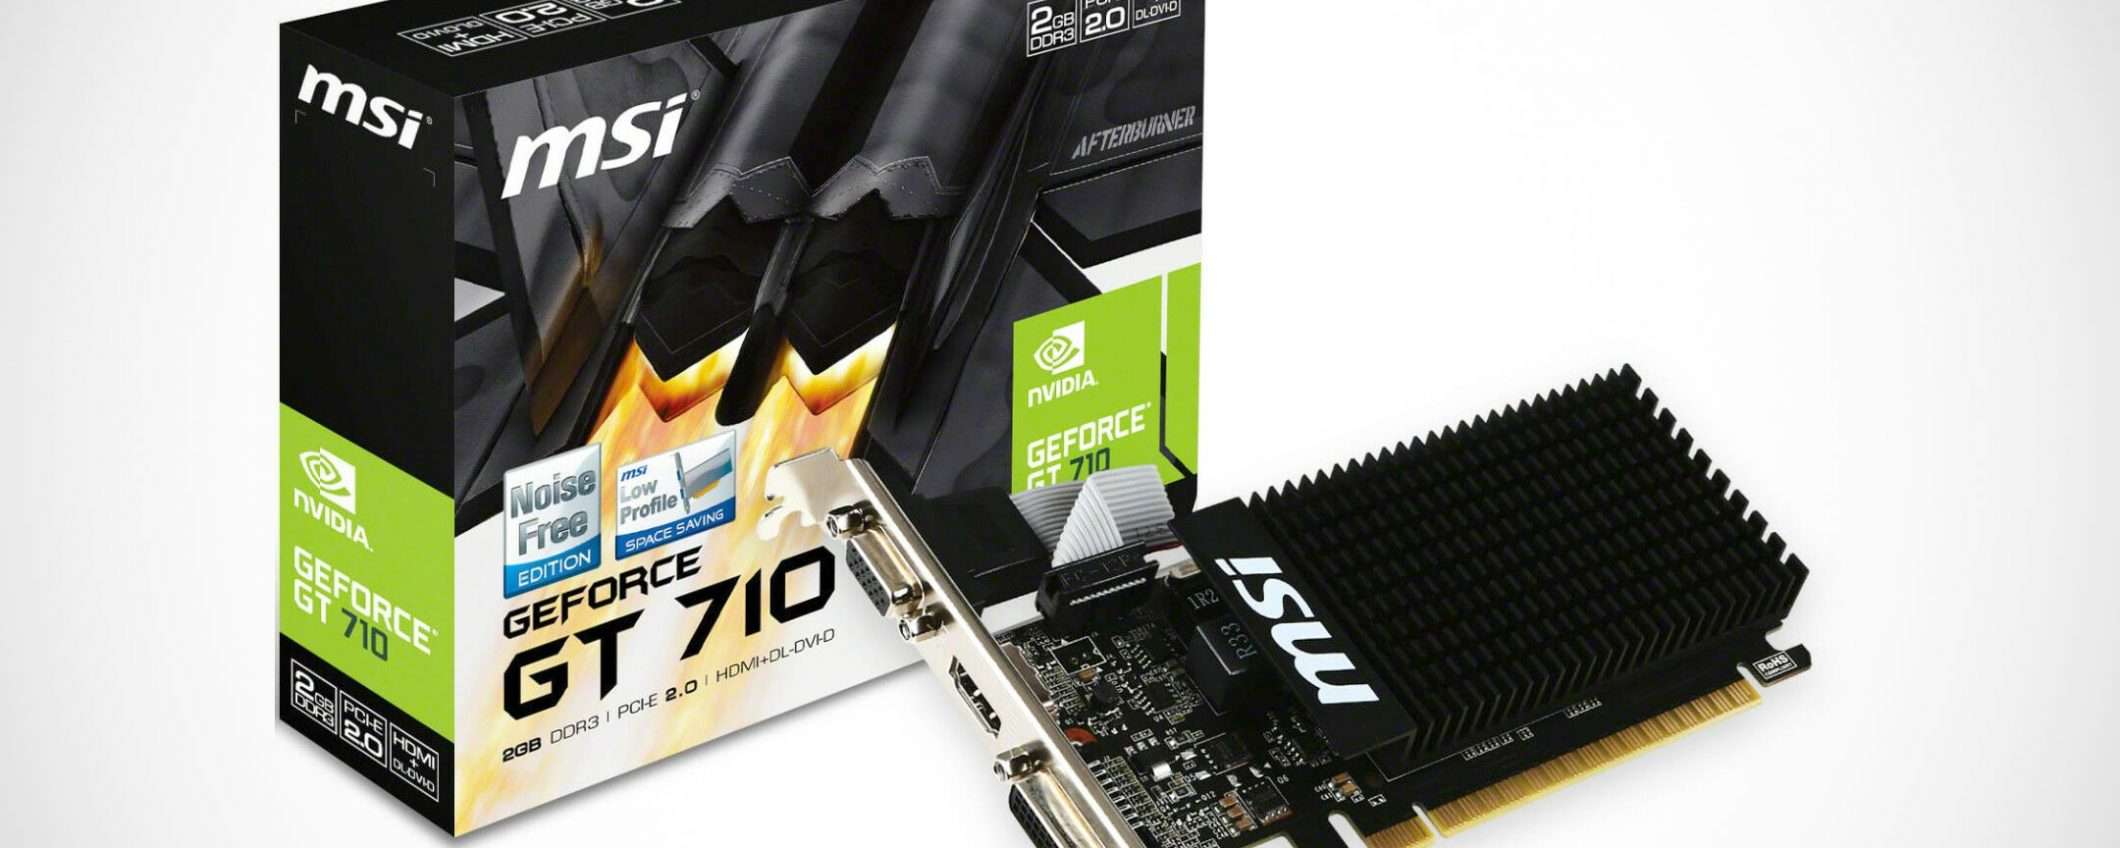 Scheda video MSI GeForce GT710 a 44,90 euro